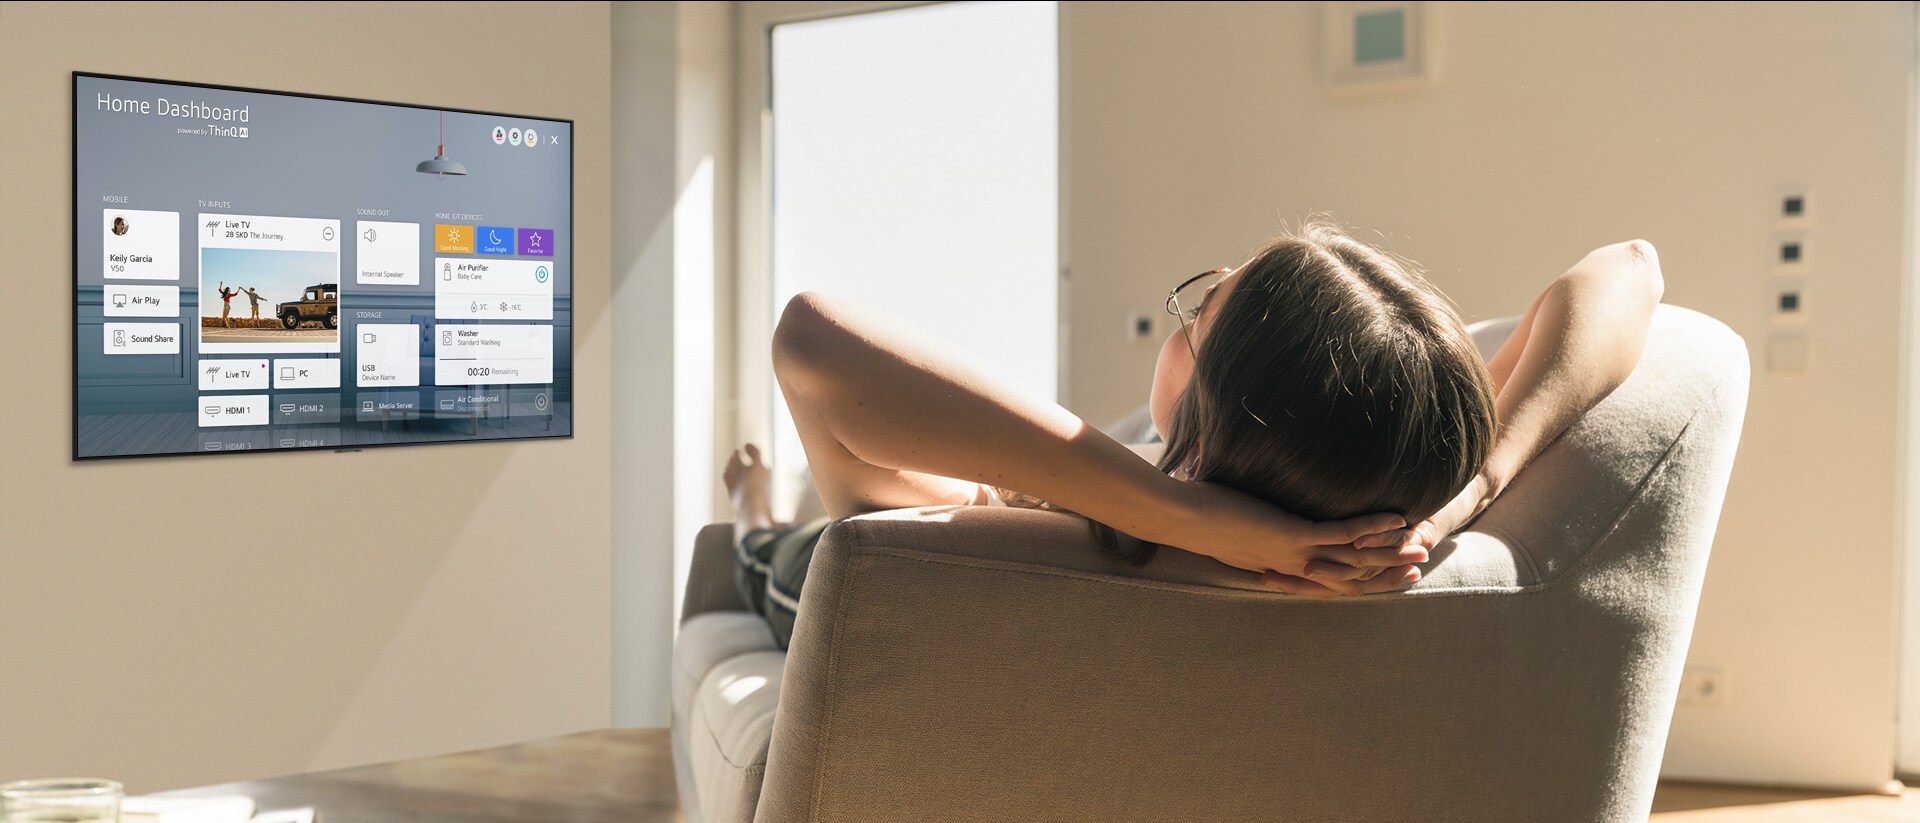 Žena ležící na pohovce, která televizoru říká, aby snížil teplotu, a funkce Home Dashboard na obrazovce televizoru